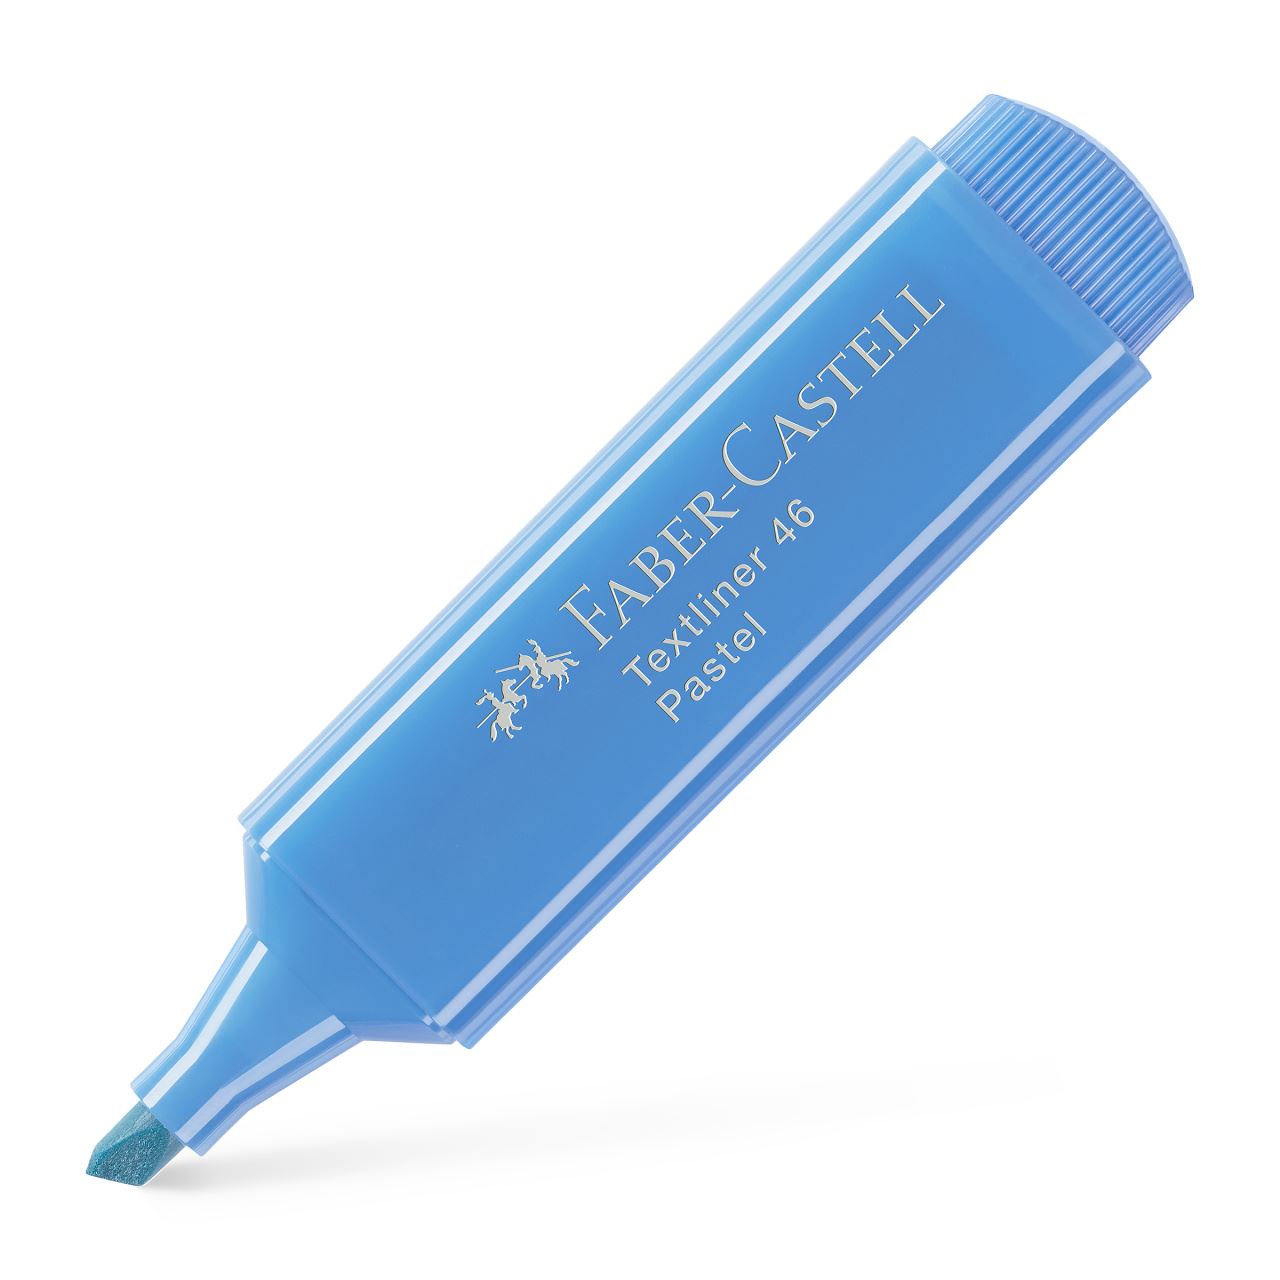 Faber-Castell - Μαρκαδόρος υπογράμμισης παστέλ μπλε ultramarine